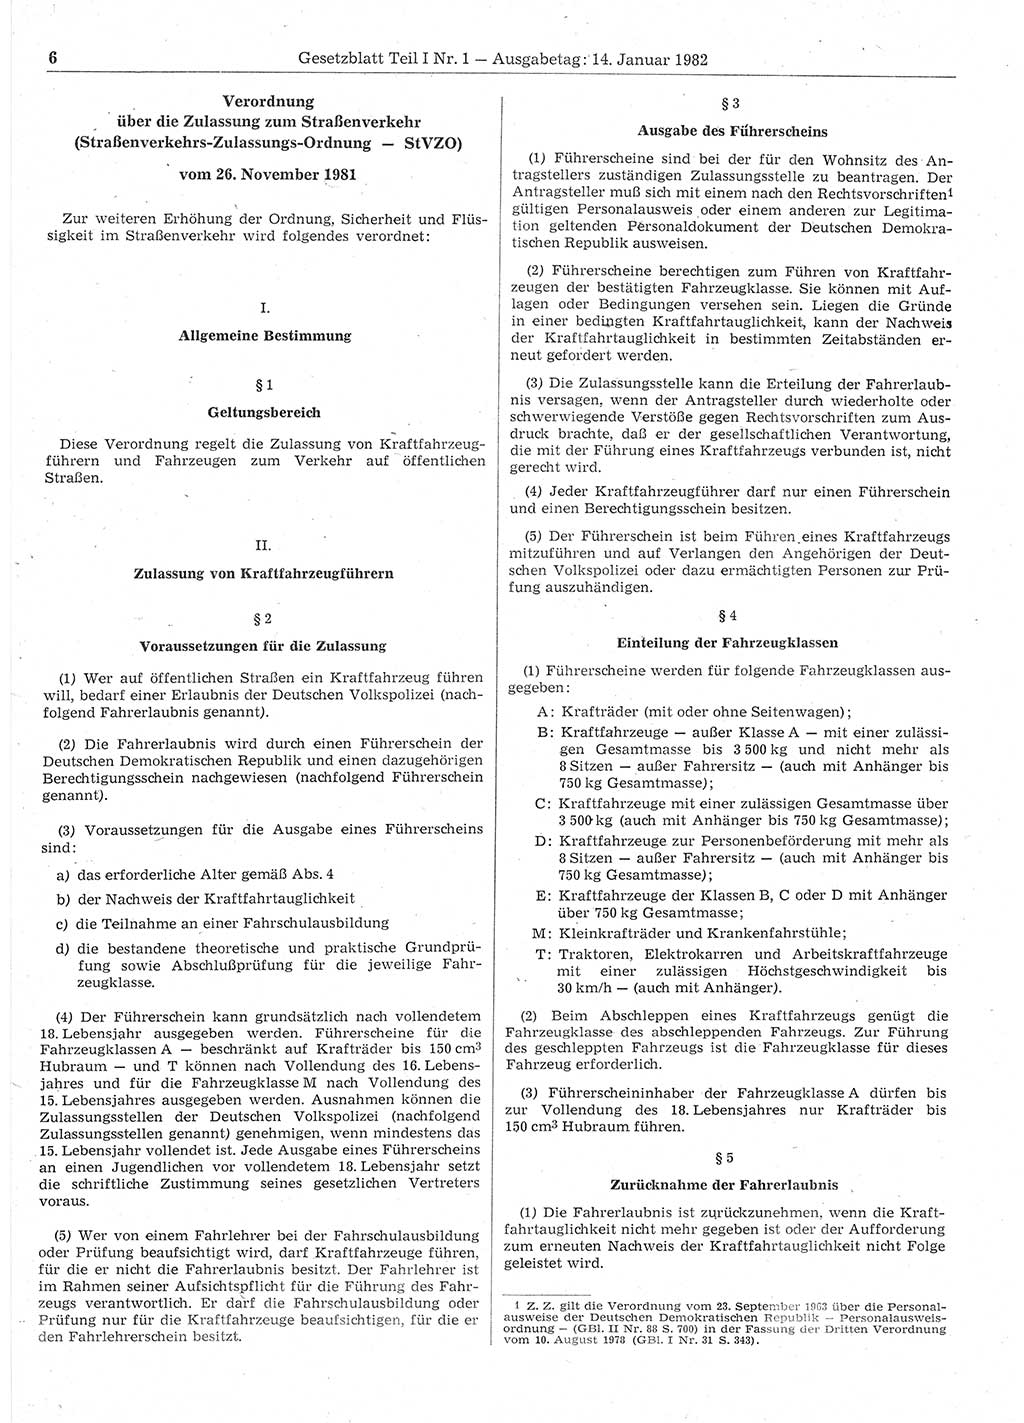 Gesetzblatt (GBl.) der Deutschen Demokratischen Republik (DDR) Teil Ⅰ 1982, Seite 6 (GBl. DDR Ⅰ 1982, S. 6)